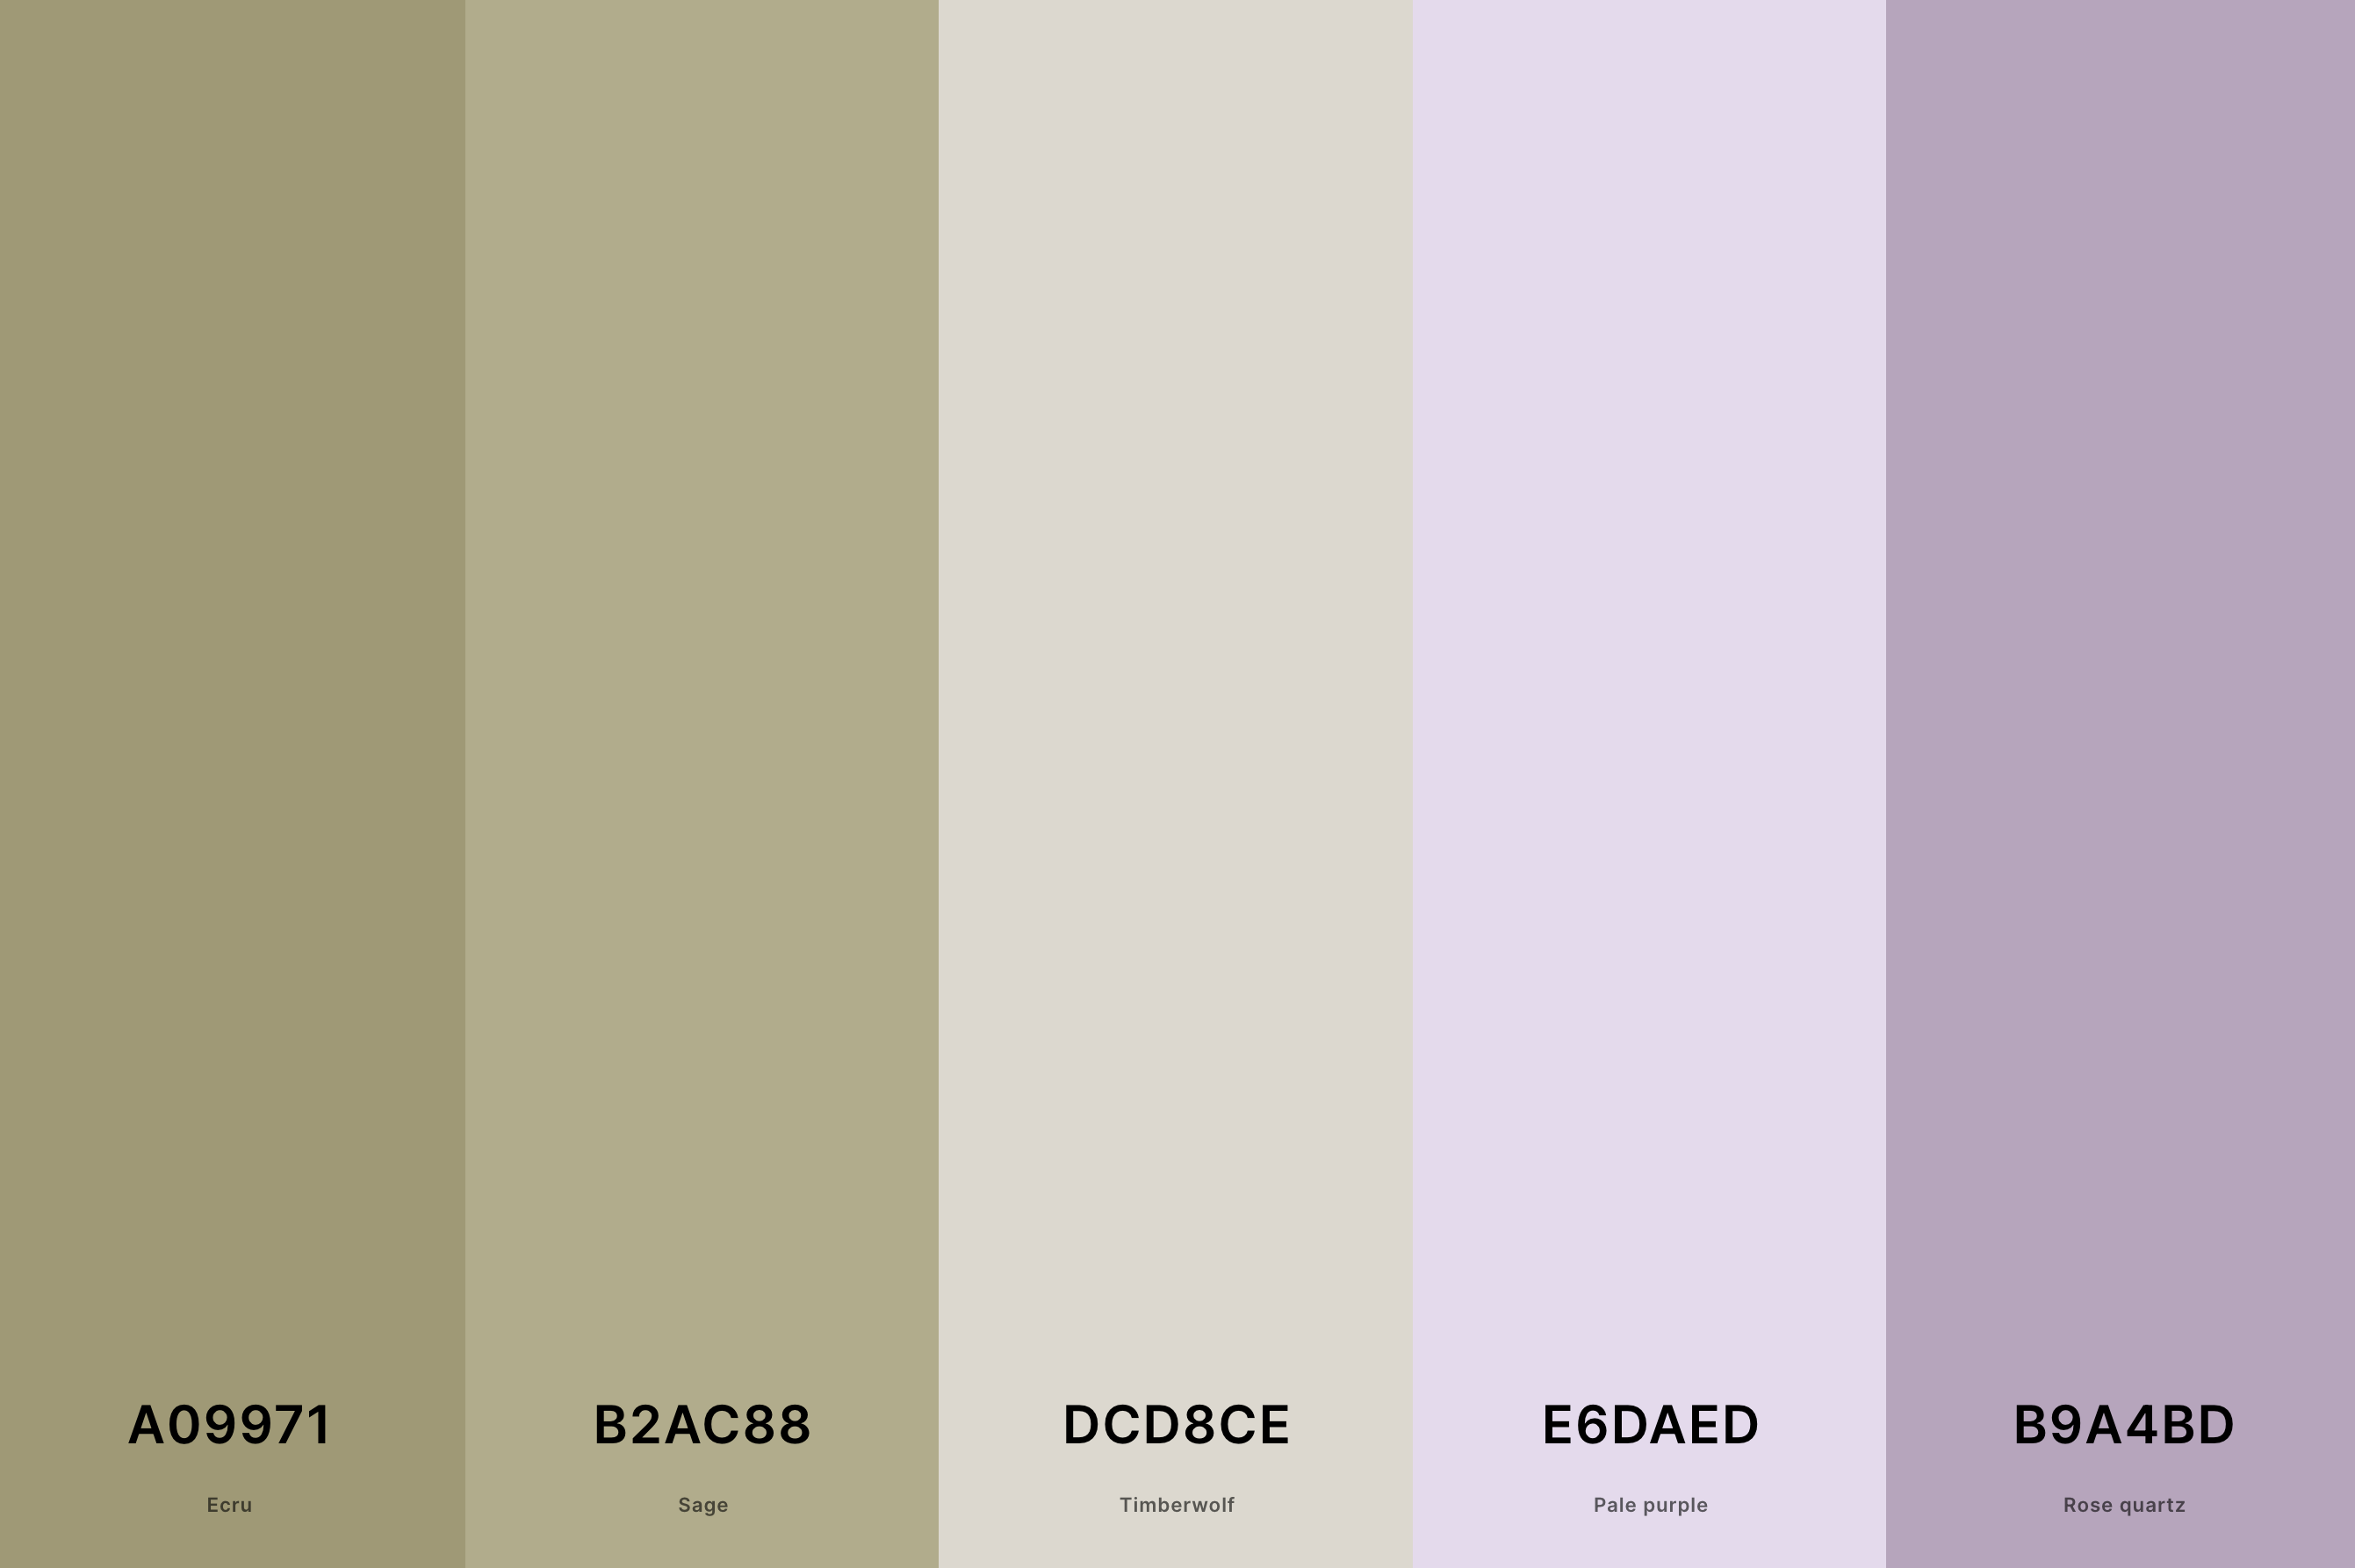 1. Lavender And Sage Color Palette Color Palette with Ecru (Hex #A09971) + Sage (Hex #B2AC88) + Timberwolf (Hex #DCD8CE) + Pale Purple (Hex #E6DAED) + Rose Quartz (Hex #B9A4BD) Color Palette with Hex Codes